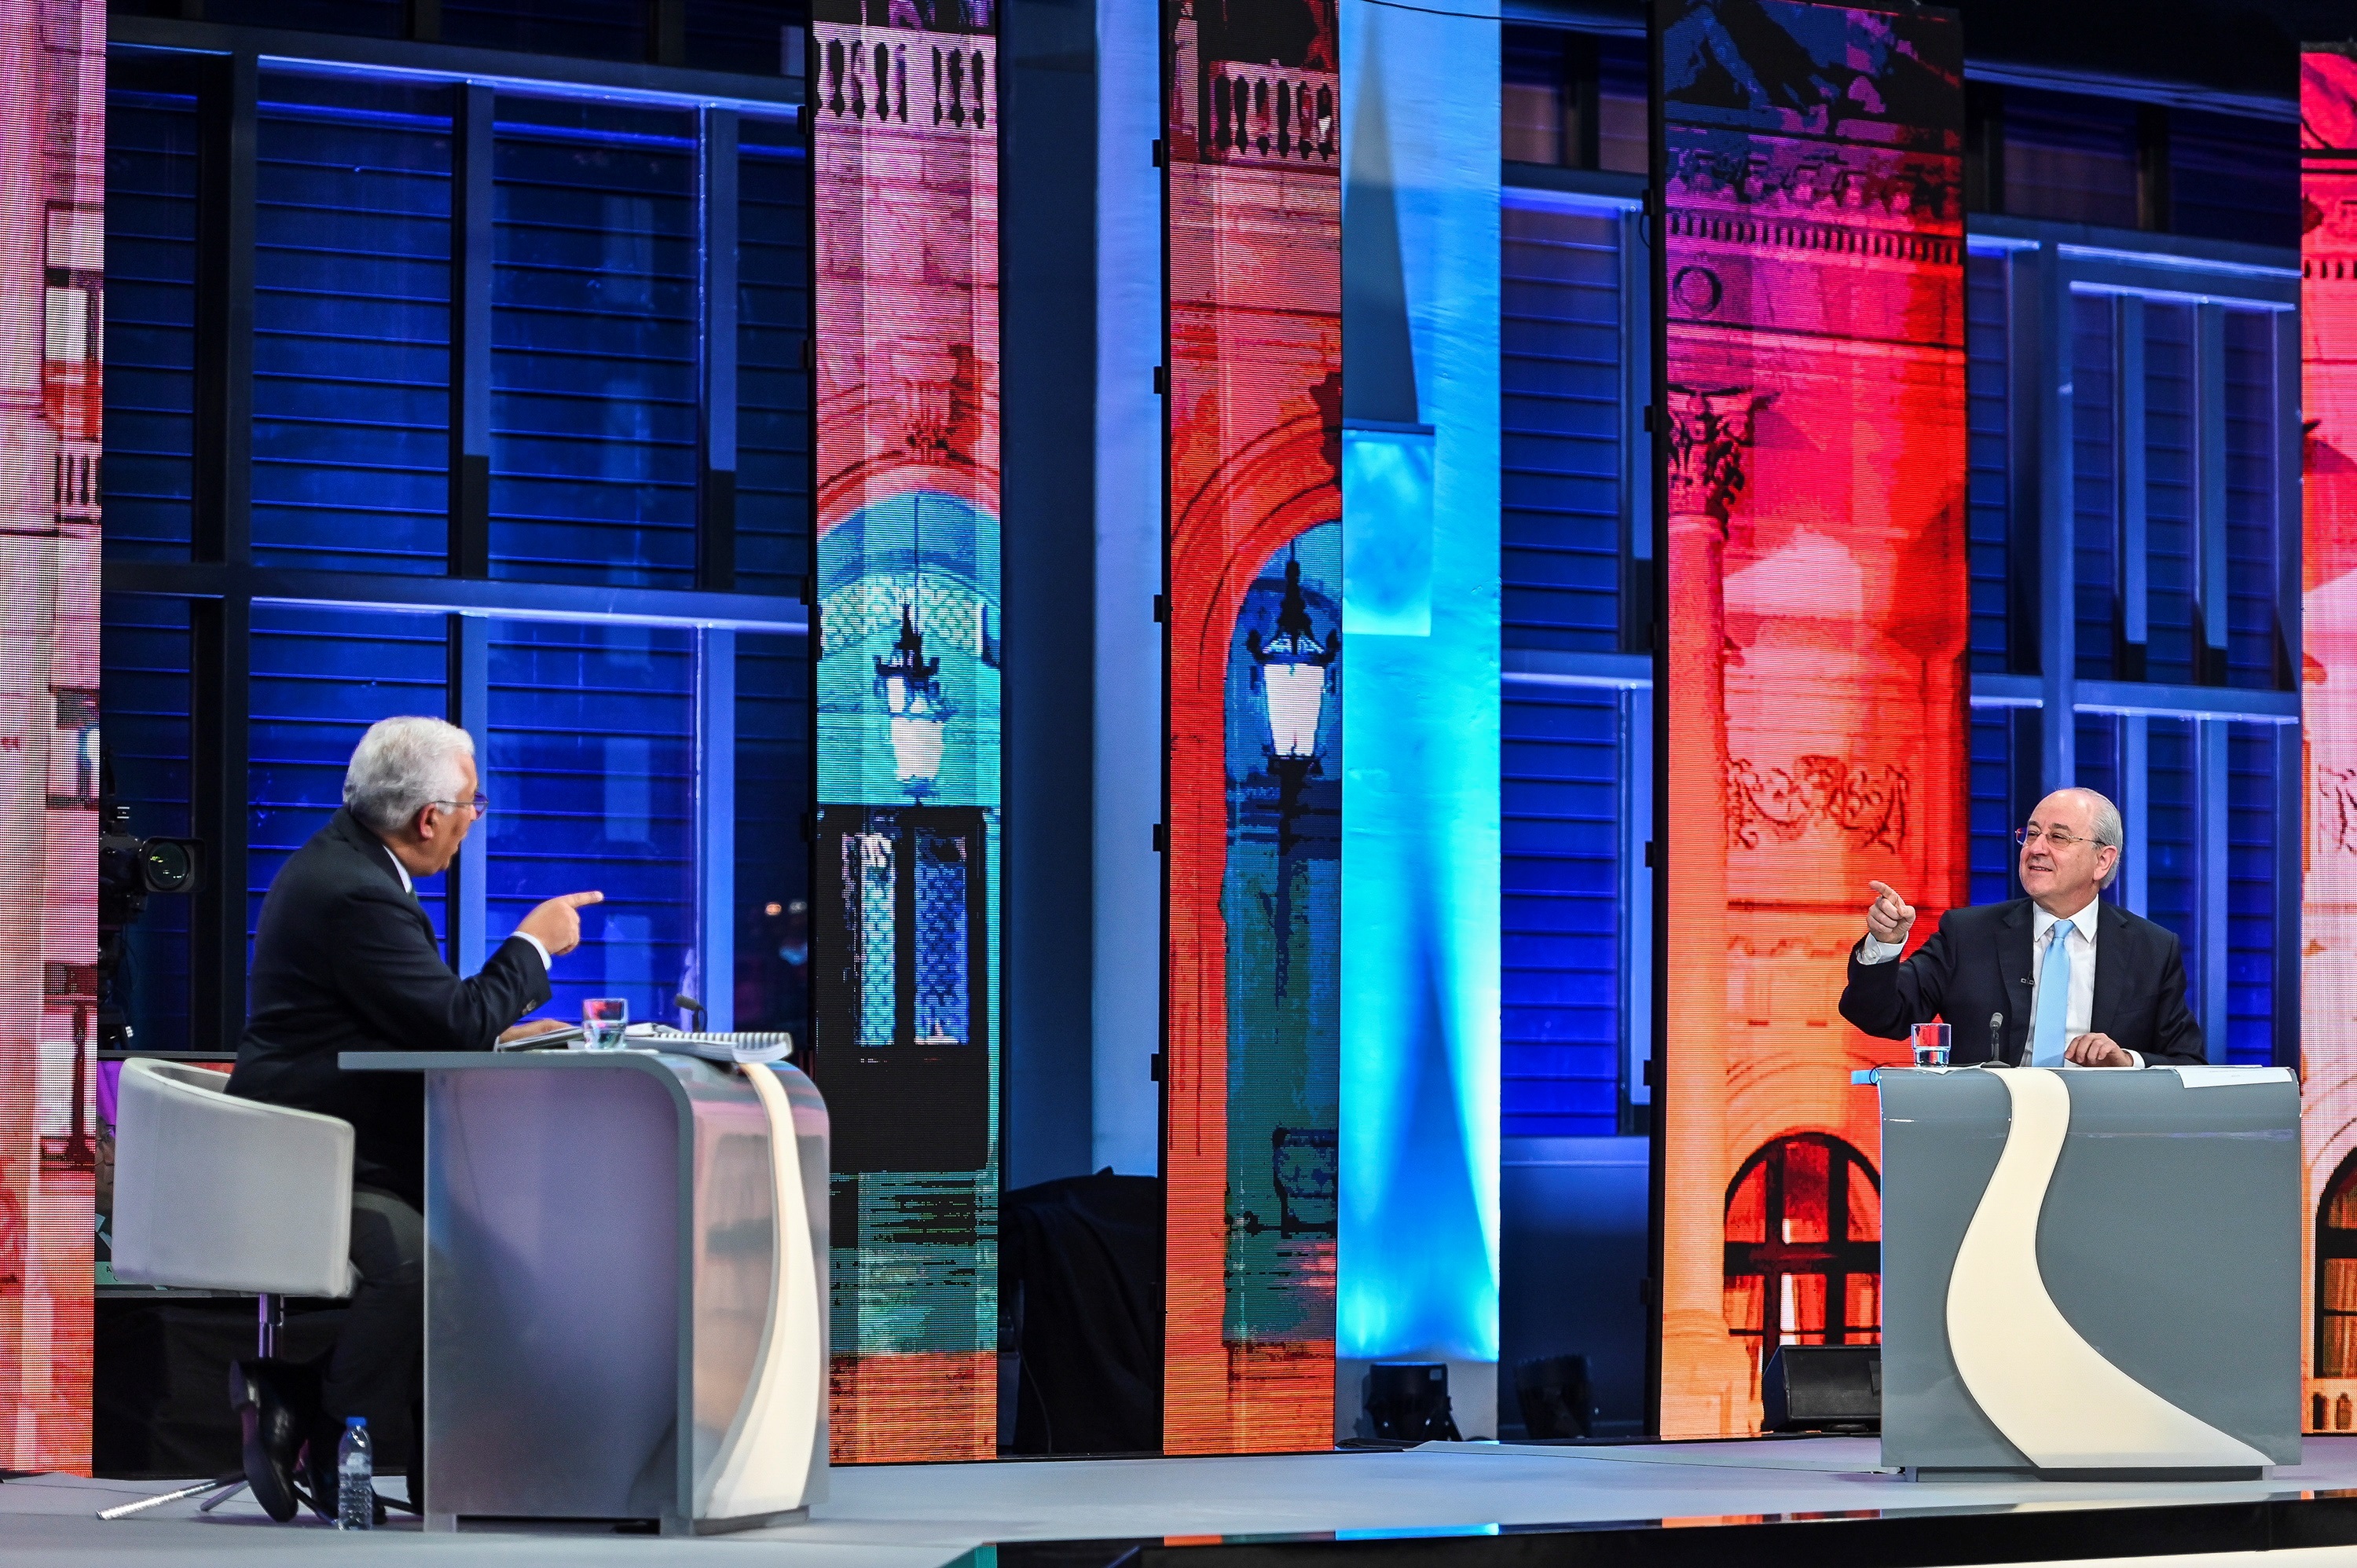 La política importa en Portugal: el experimento de los debates de todos contra todos triunfa en televisión